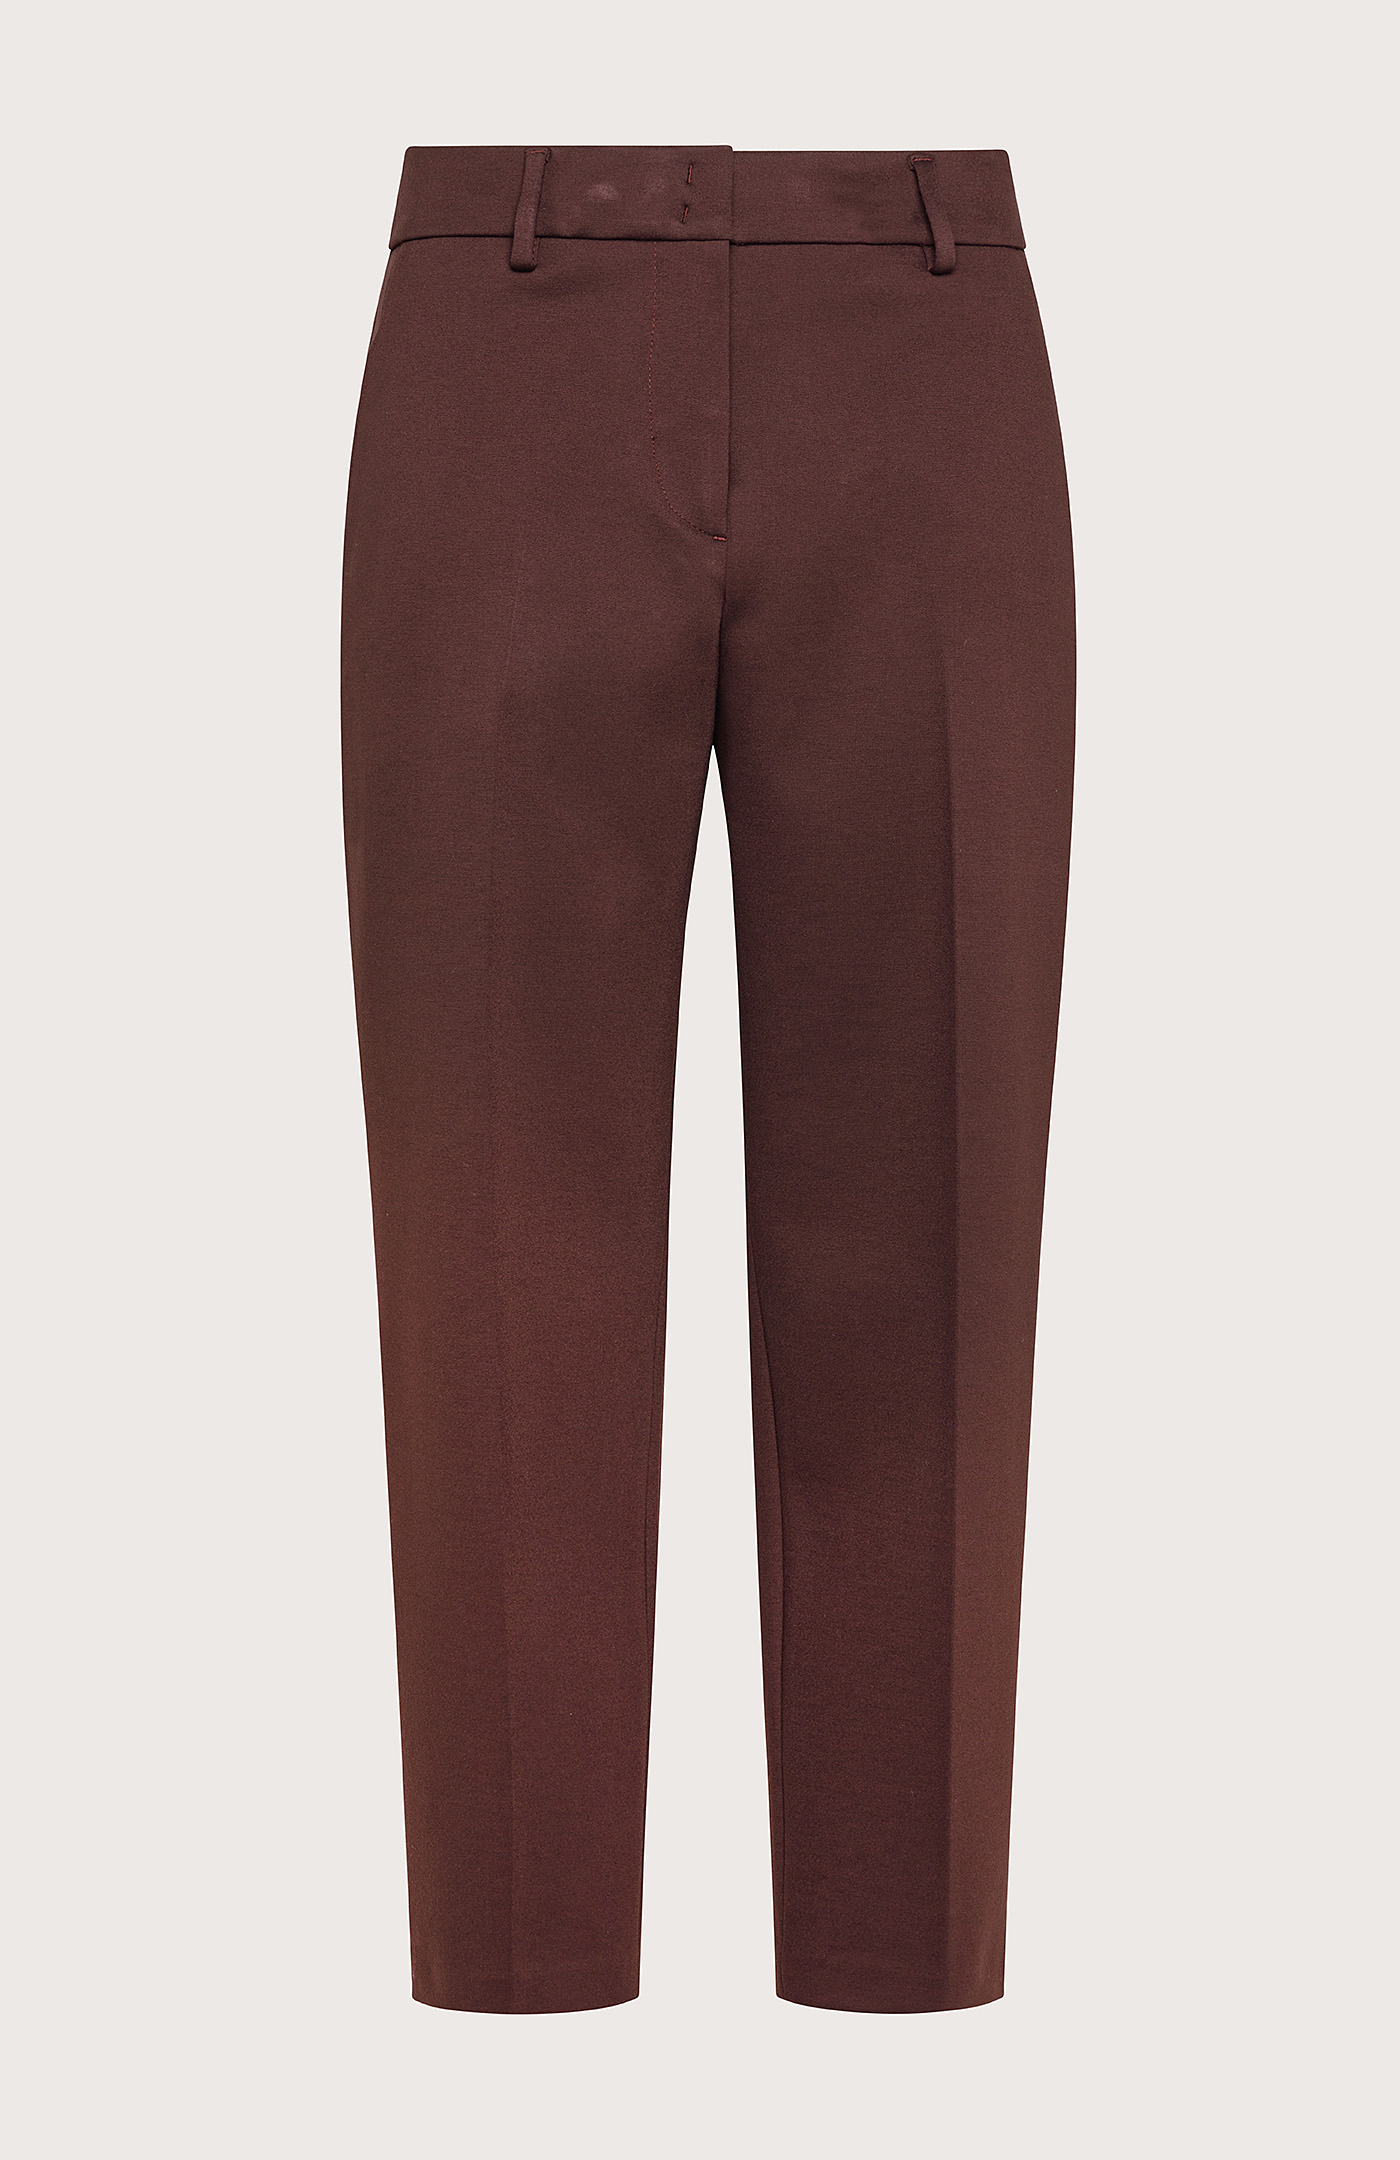 Women's Carrot fit single pleat trousers | ROHE | 24S